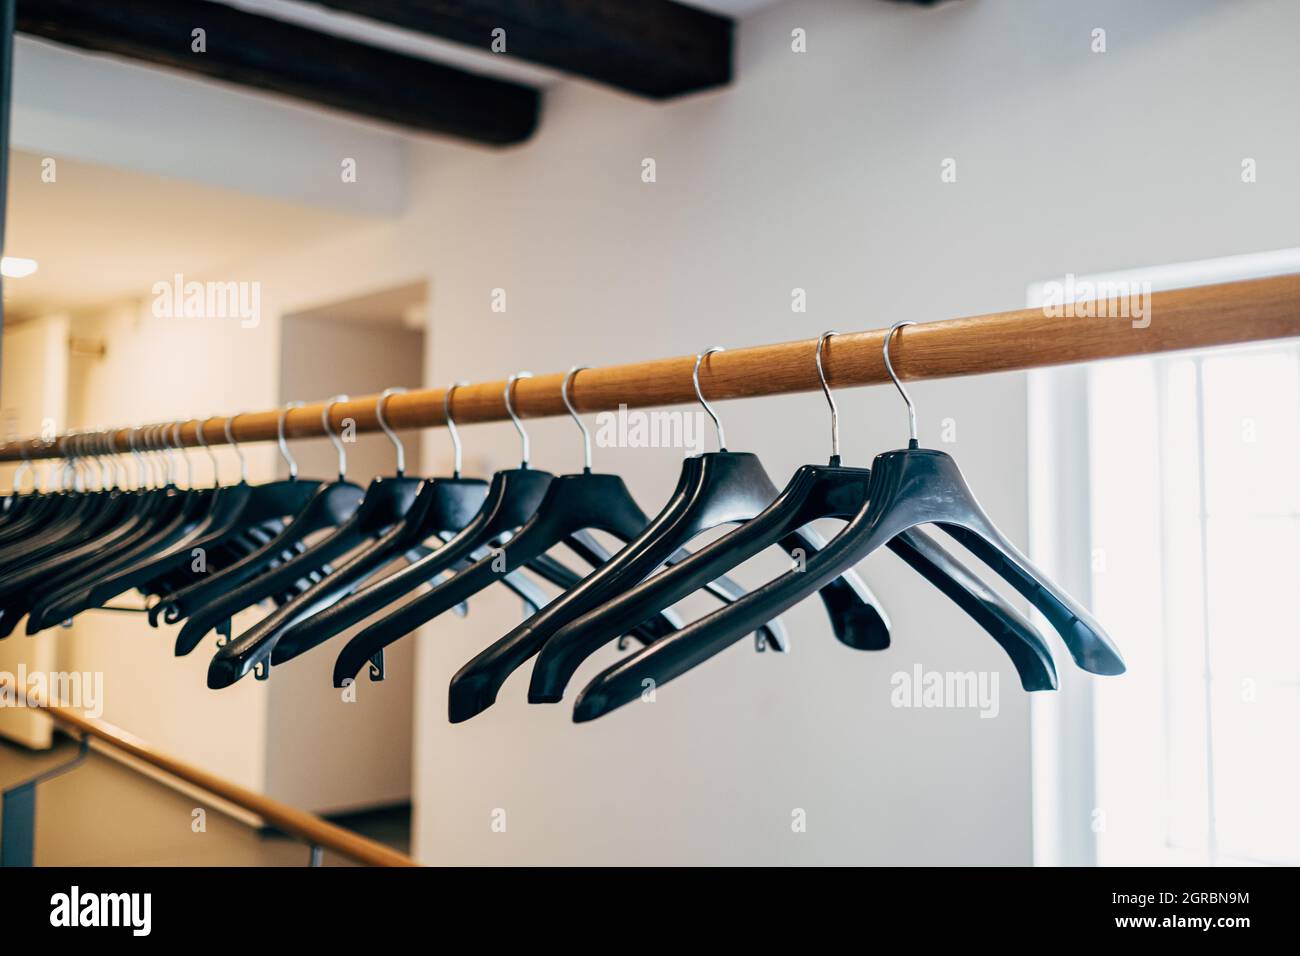 Schwarzer Kleiderbügel Aus Kunststoff An Der Garderobe Stockfotografie -  Alamy